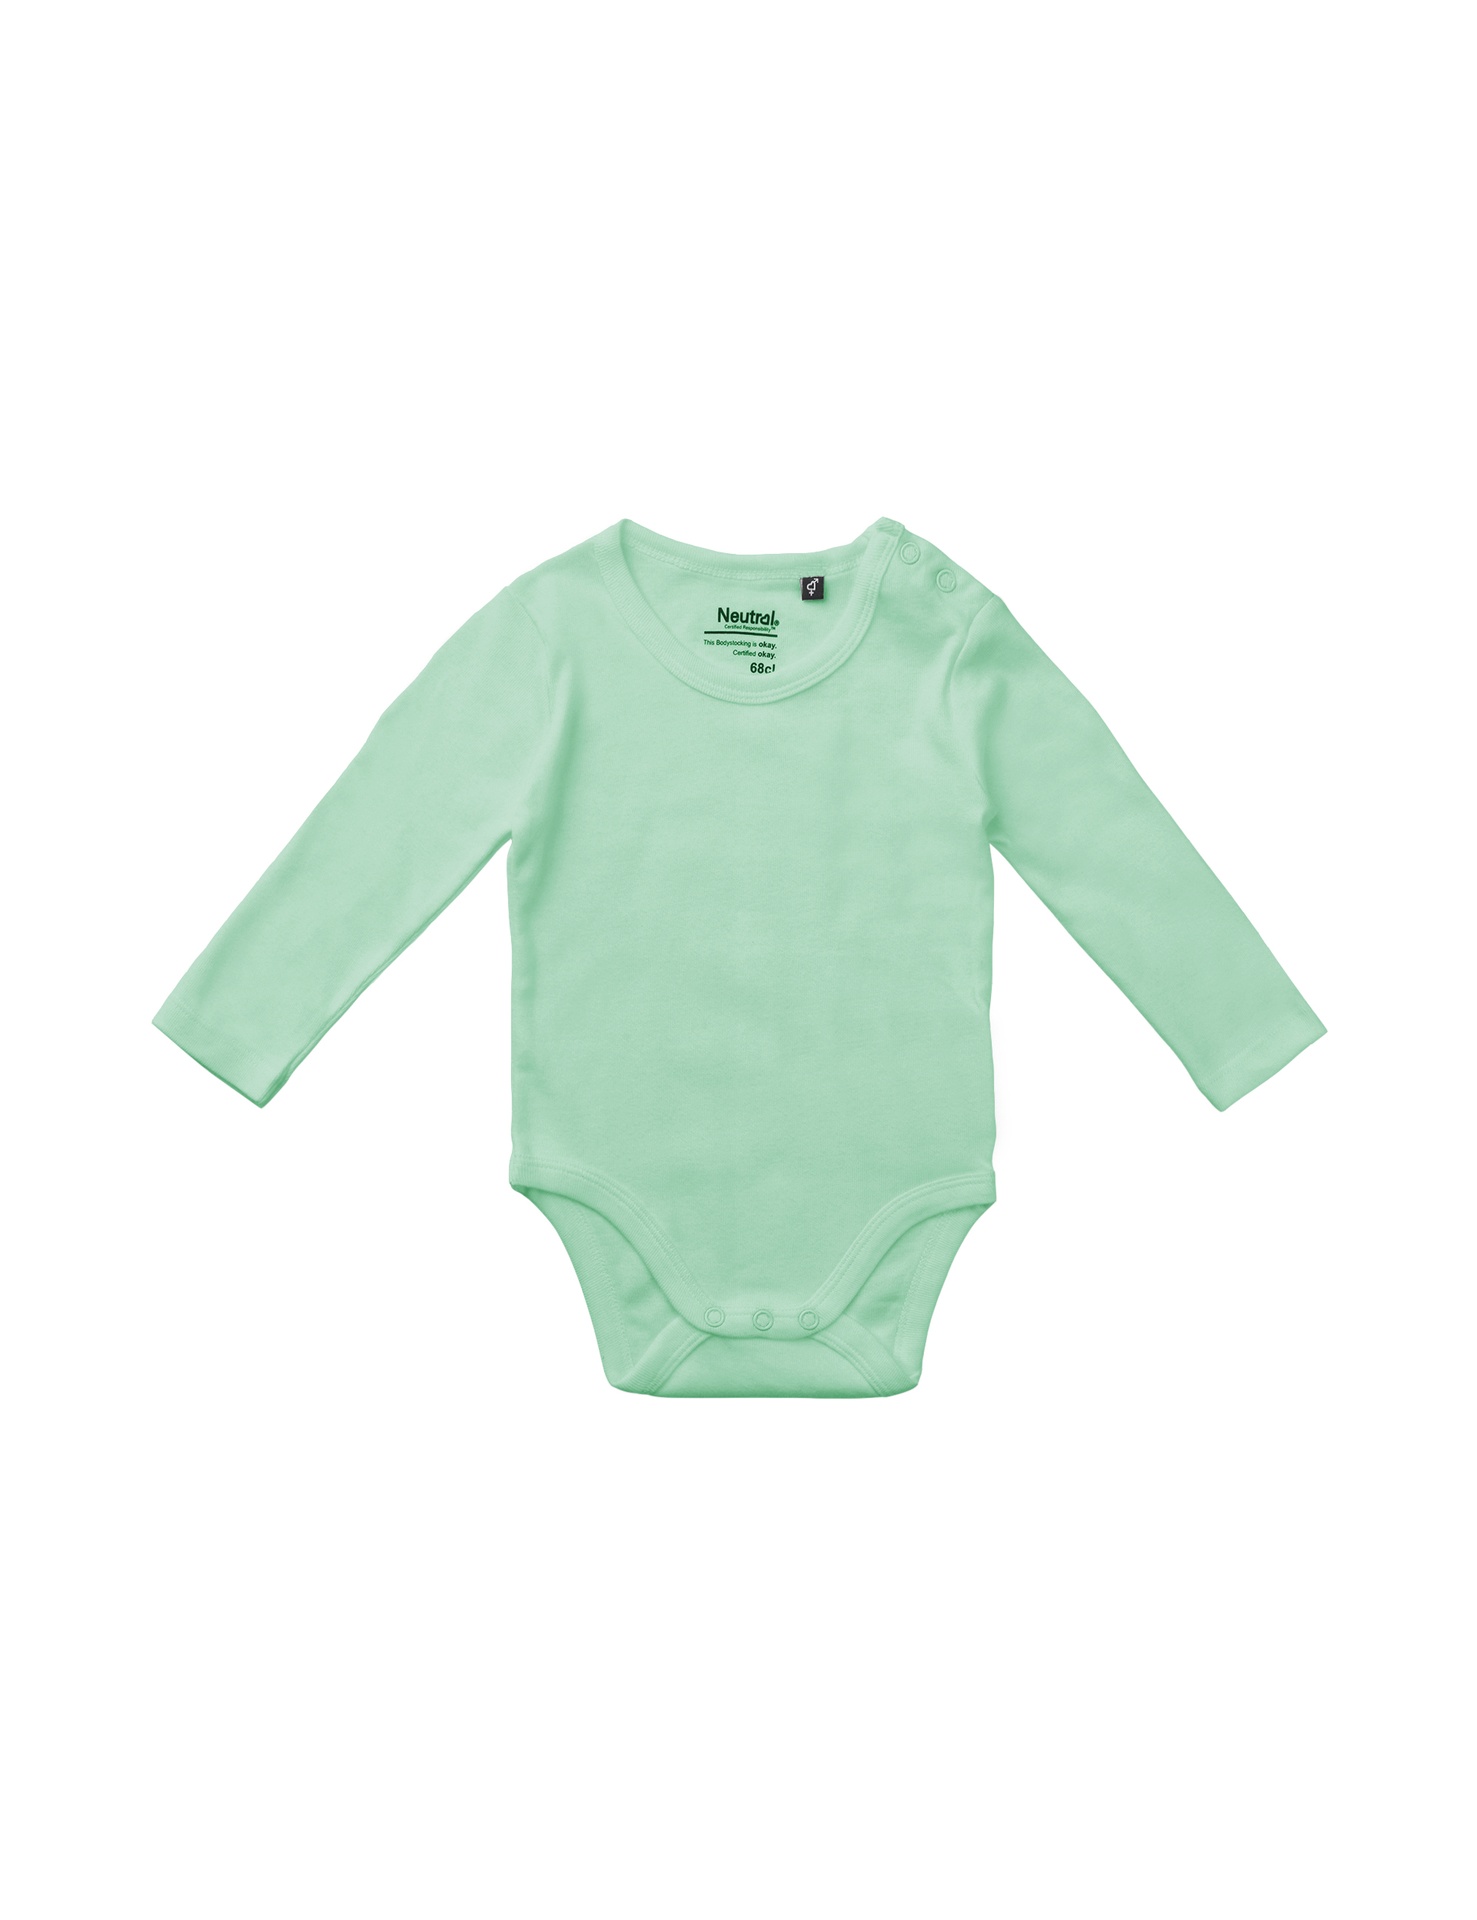 [PR/05741] Babies Long Sleeve Bodystocking (Dusty Mint 40, 86 cm)